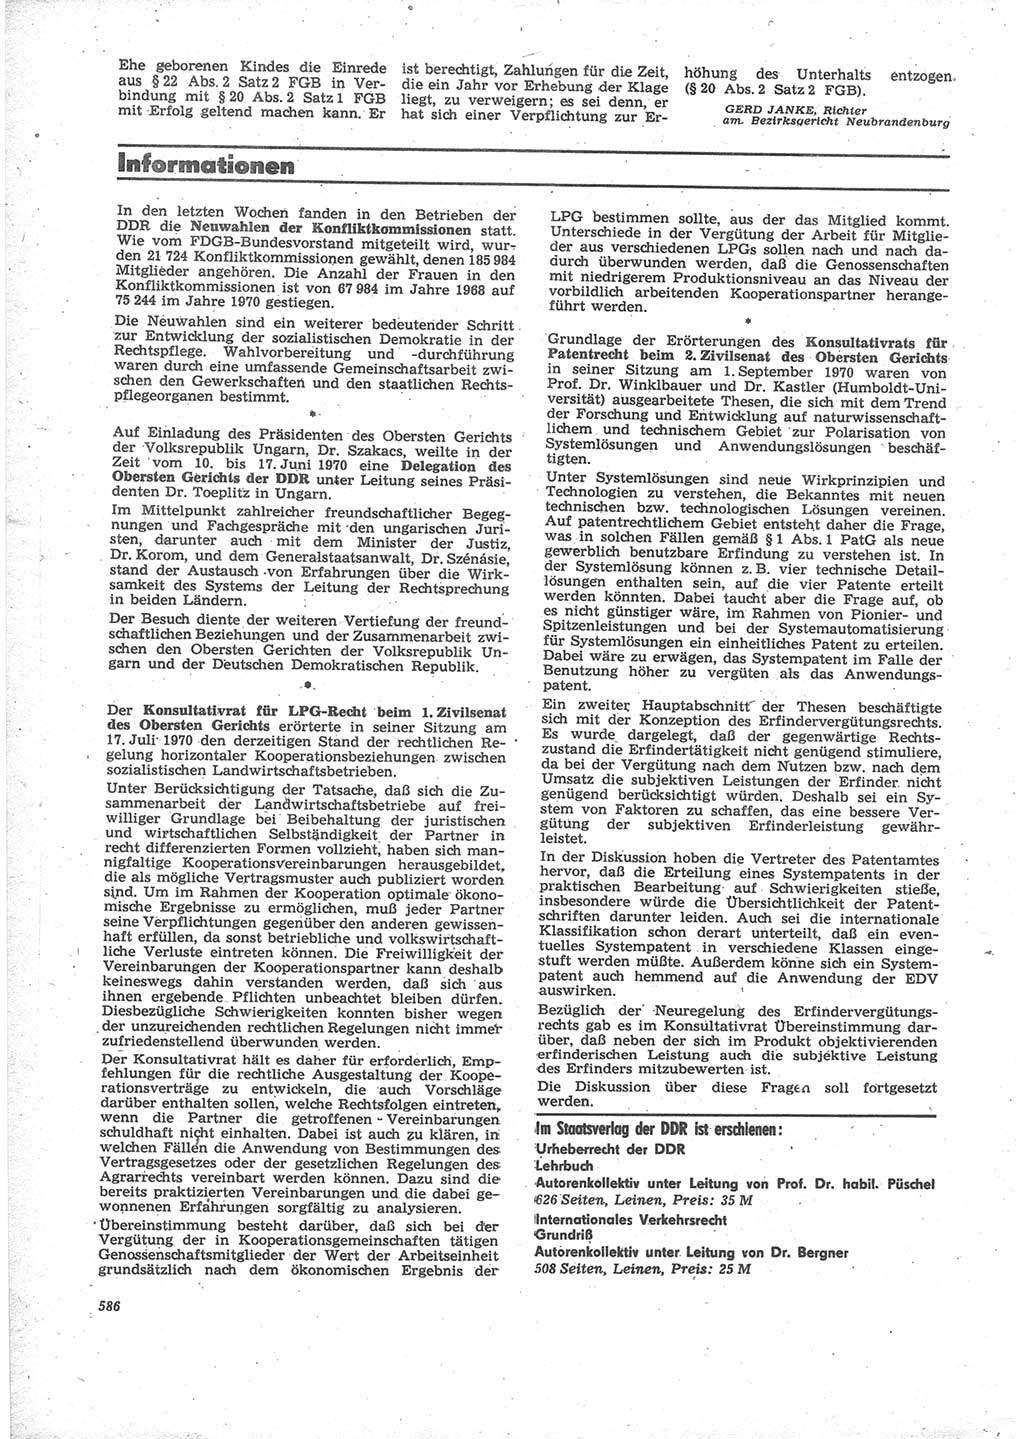 Neue Justiz (NJ), Zeitschrift für Recht und Rechtswissenschaft [Deutsche Demokratische Republik (DDR)], 24. Jahrgang 1970, Seite 586 (NJ DDR 1970, S. 586)